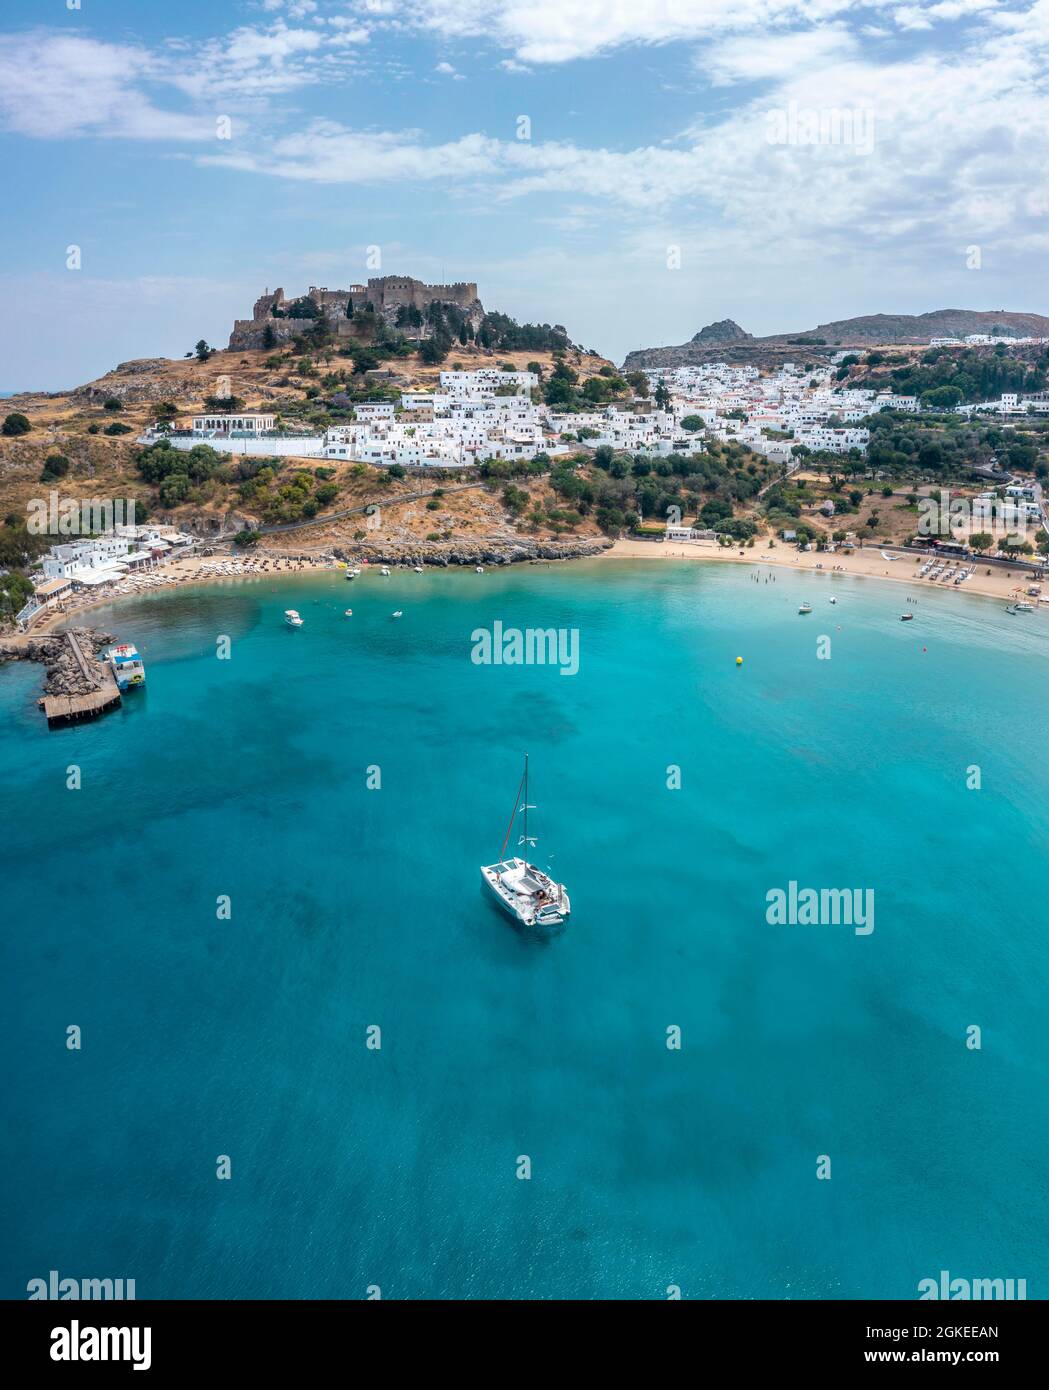 Barca a vela sul mare turchese, spiaggia sabbiosa, acropoli di Lindos, antica cittadella su una scogliera ripida, Lindos, Rodi, Dodecaneso, Grecia Foto Stock